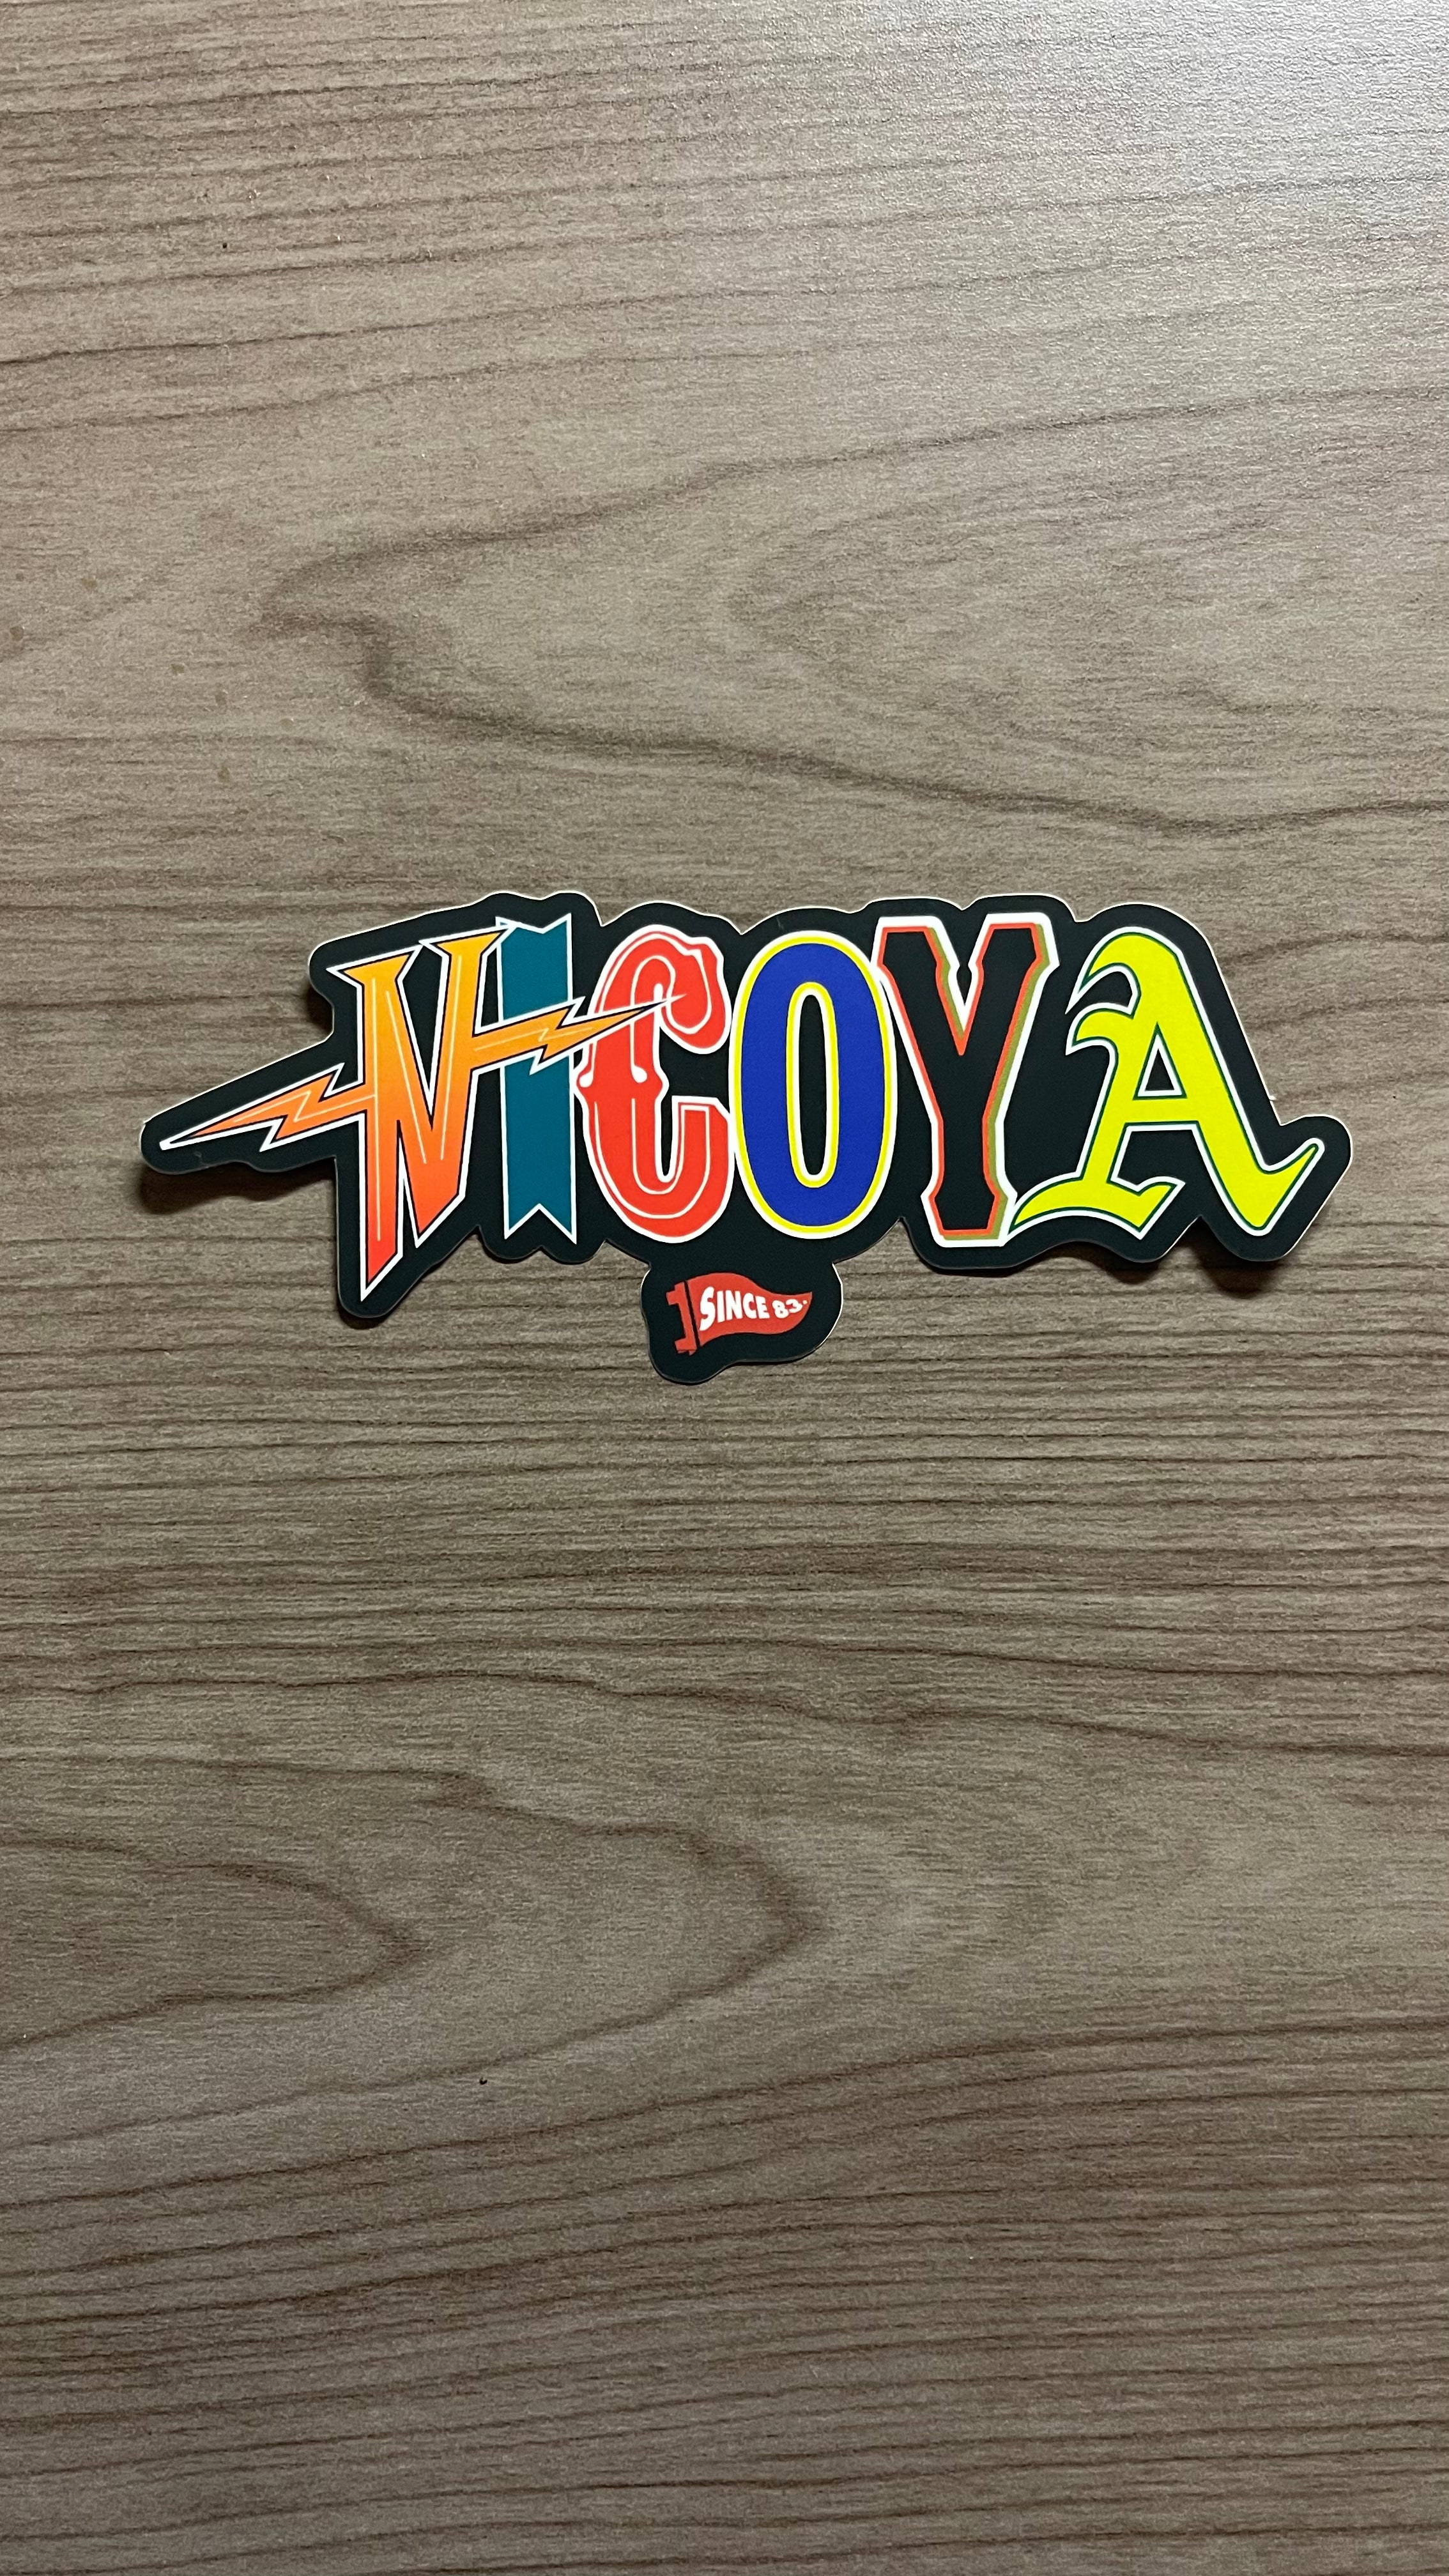 Bay Area Nicoya | Vinyl Sticker